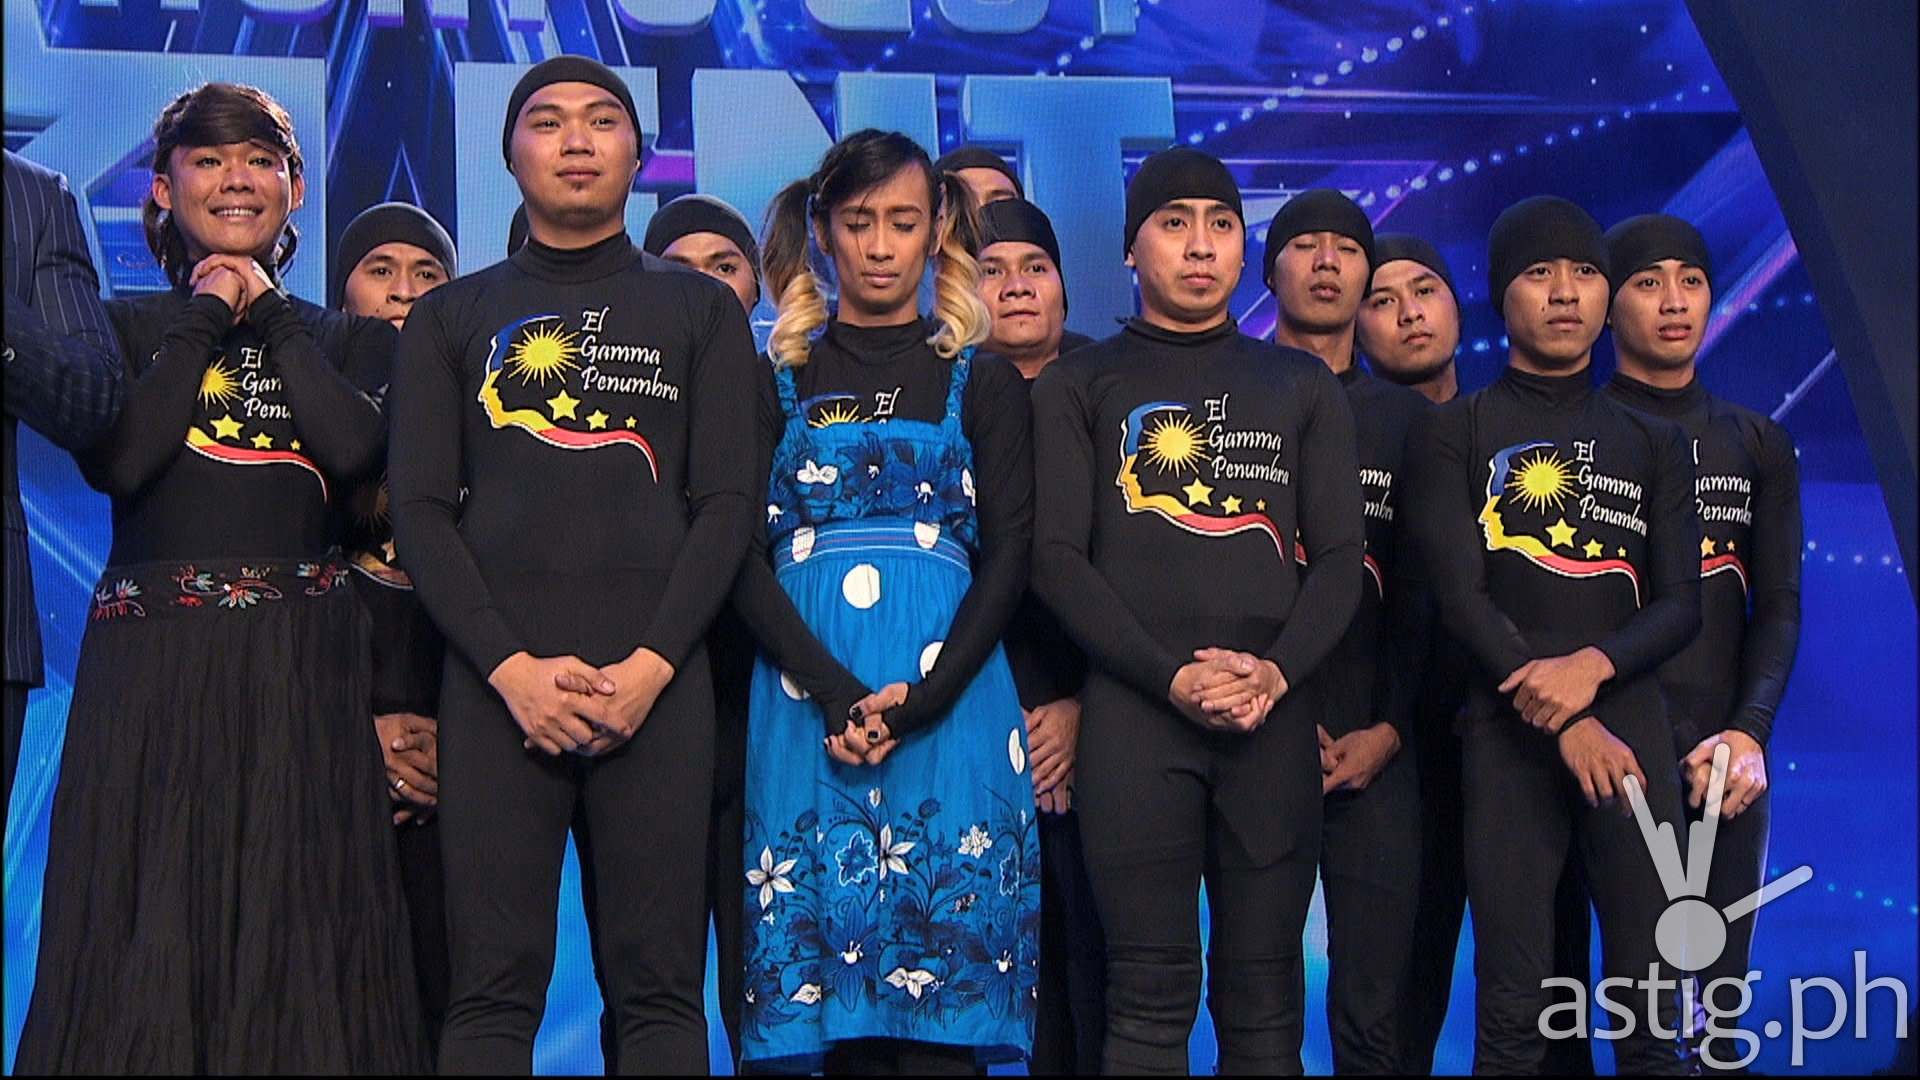 El Gamma Penumbra Asia's Got Talent finals performance